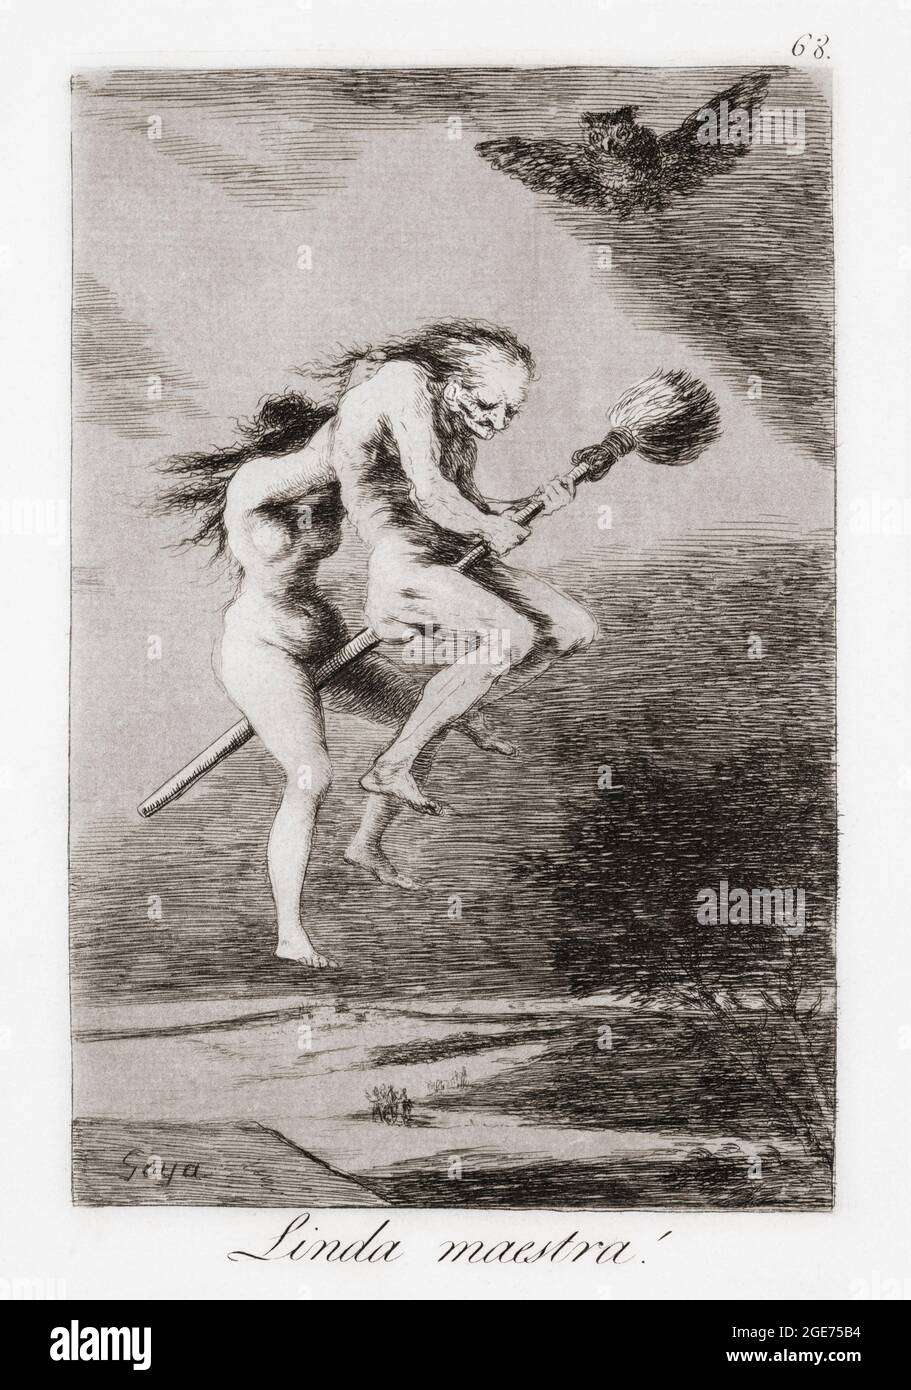 Linda Maestra! Oder Pretty Teacher! Eine junge Hexe lehrt einen alten Mann zu fliegen. Nach der Arbeit von Francisco Goya, Capricho Nummer 68. Goya schuf die 80 Grafiken von Los Caprichos in den Jahren 1797-1798. Stockfoto